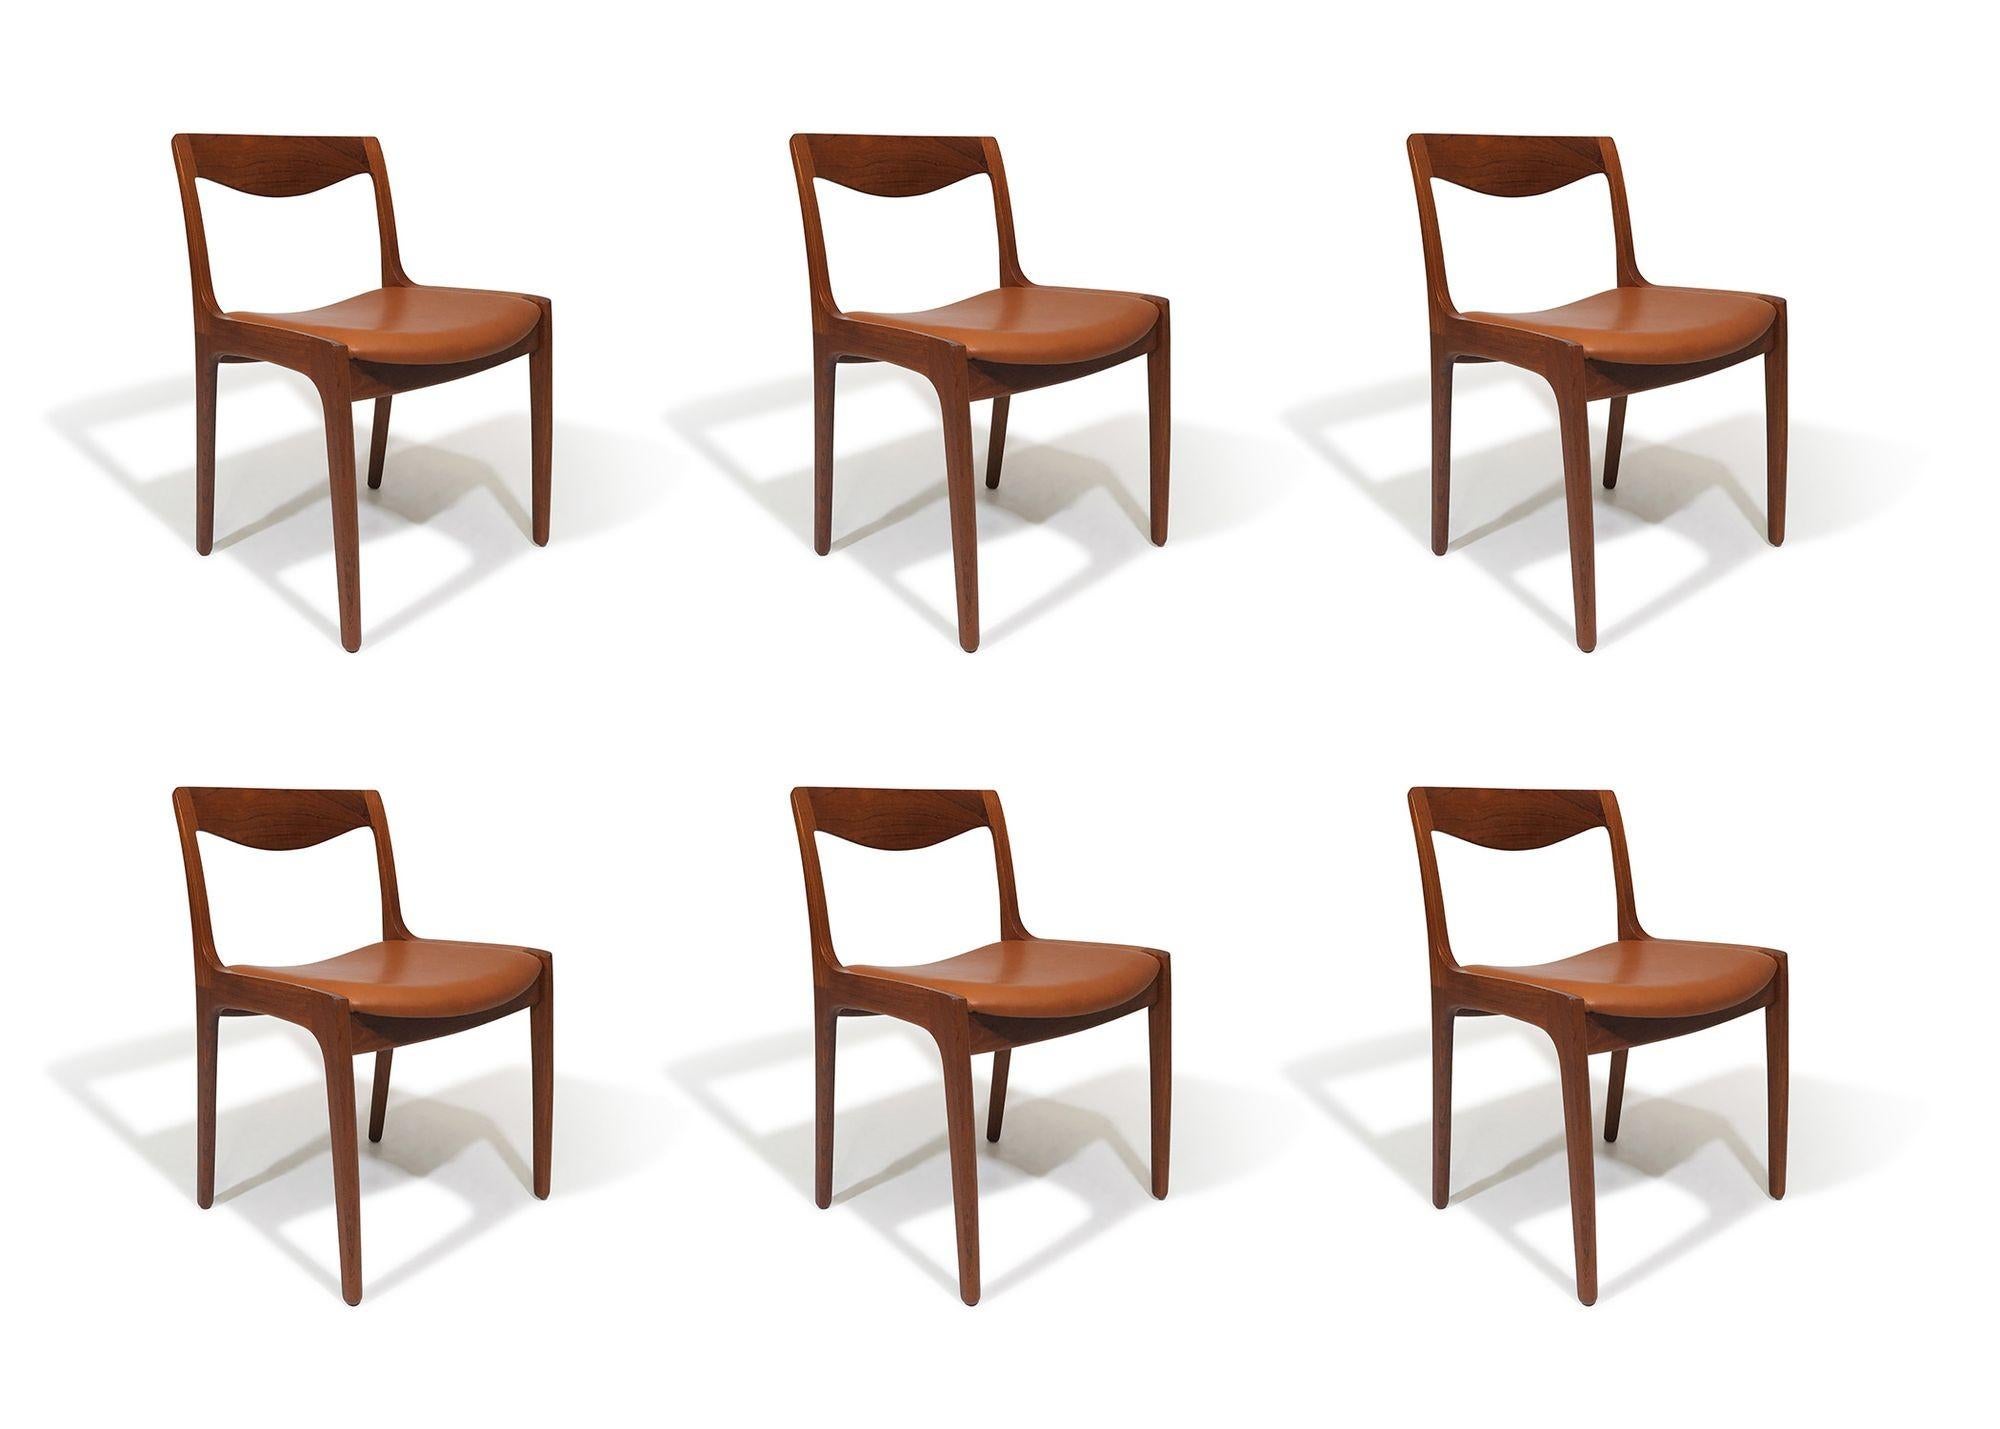 Chaises de salle à manger danoises du milieu du siècle, conçues par Vilhelm Wohlert pour Poul Jeppesen Møbelfabrik, Danemark, 1956. Les chaises sont dotées de dossiers en teck massif finement sculptés sur des piétements en teck, mettant en valeur la